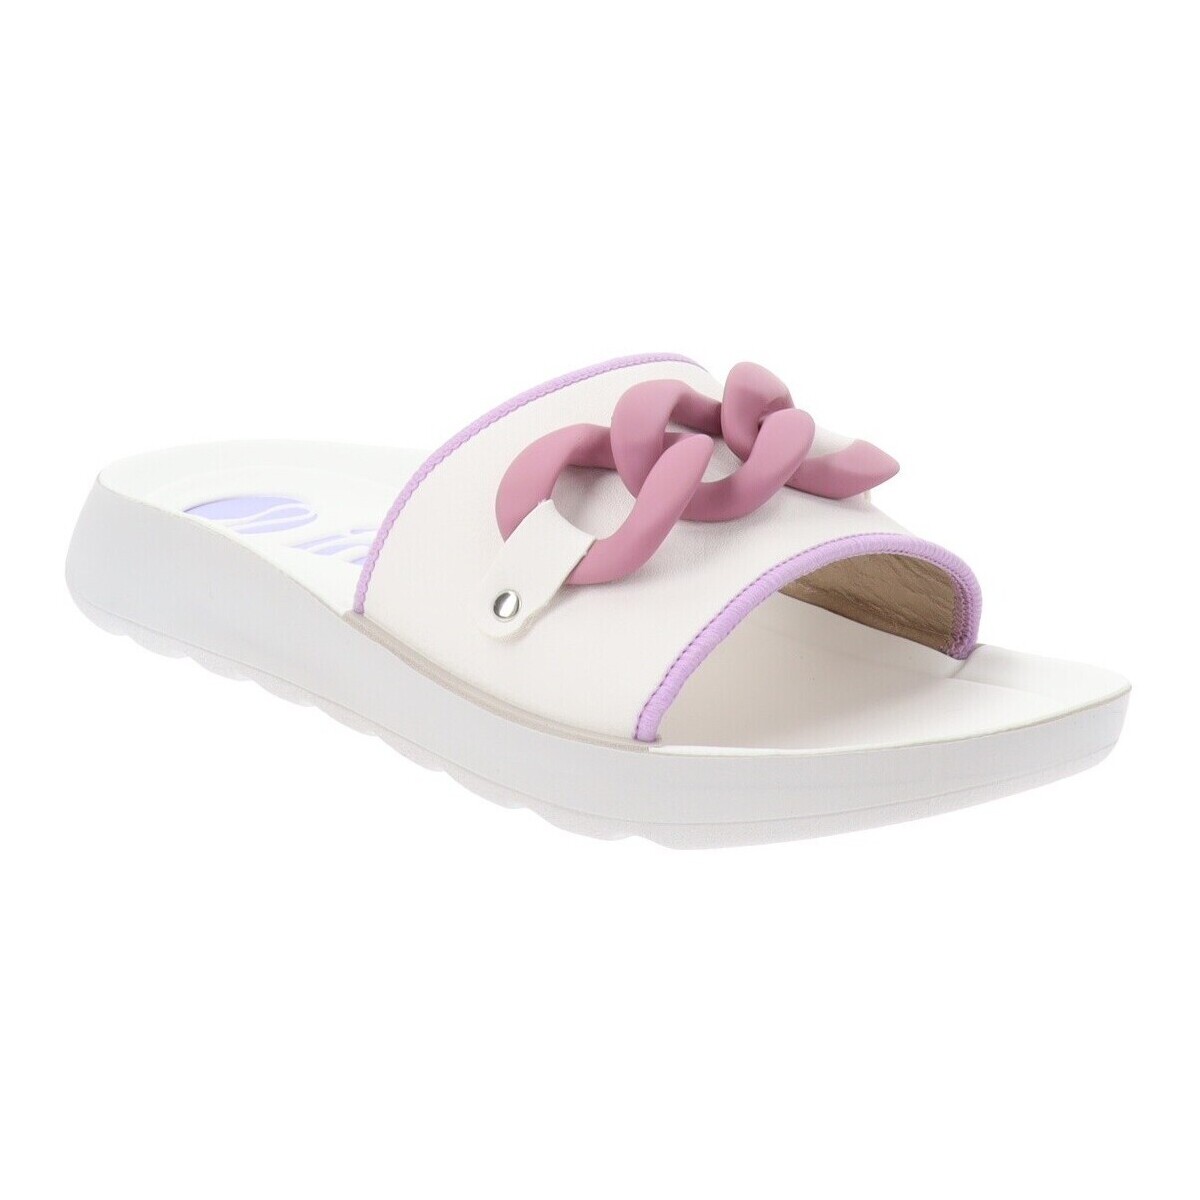 kengät Naiset Sandaalit Inblu AG000002 Violetti